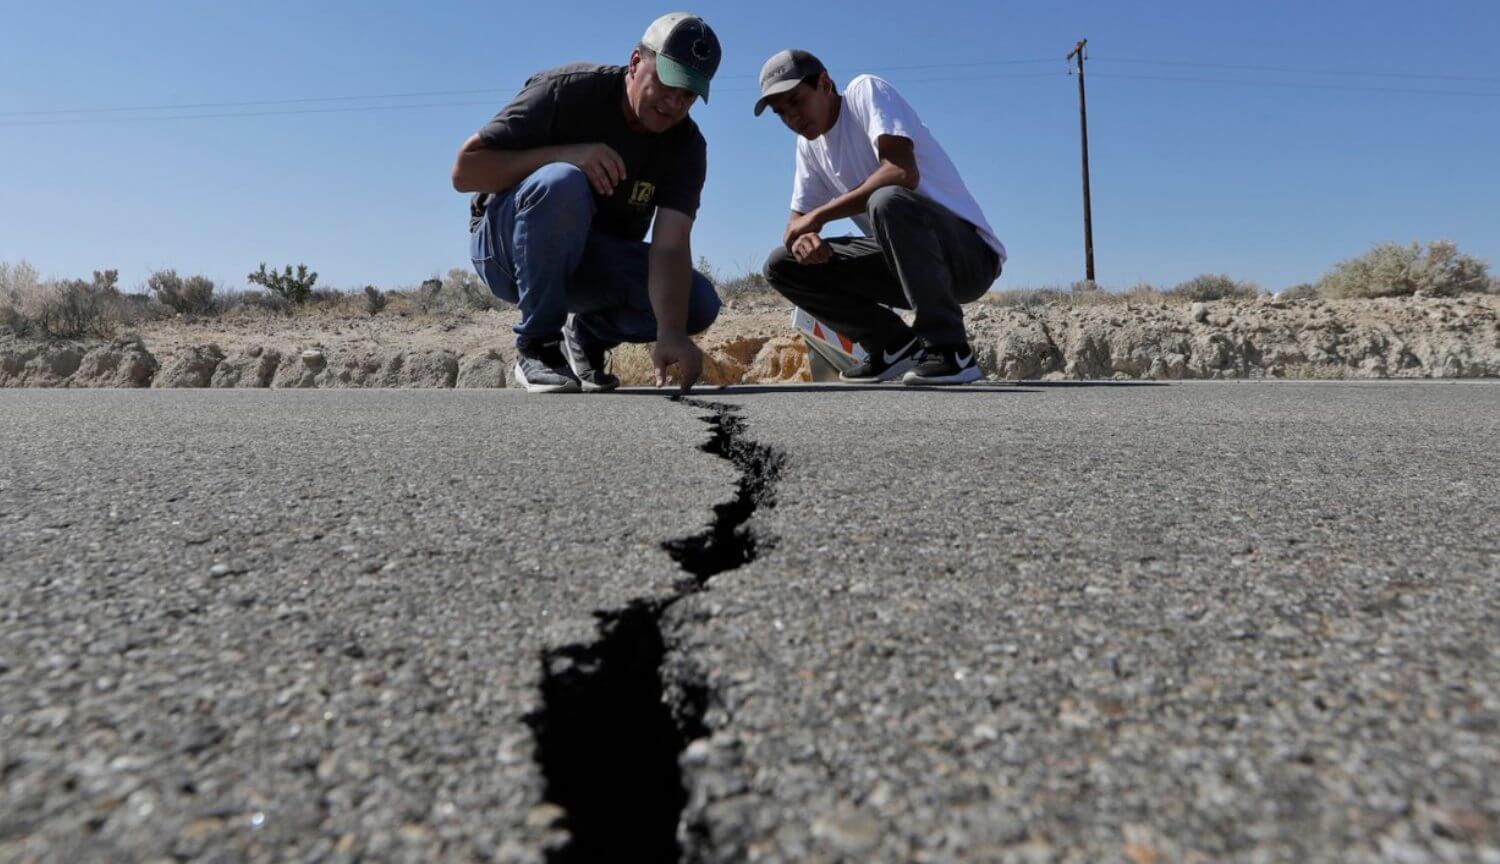 Nos estados unidos aconteceu de mais de 3000 terremotos por alguns dias. Na Califórnia, espera-se ainda mais